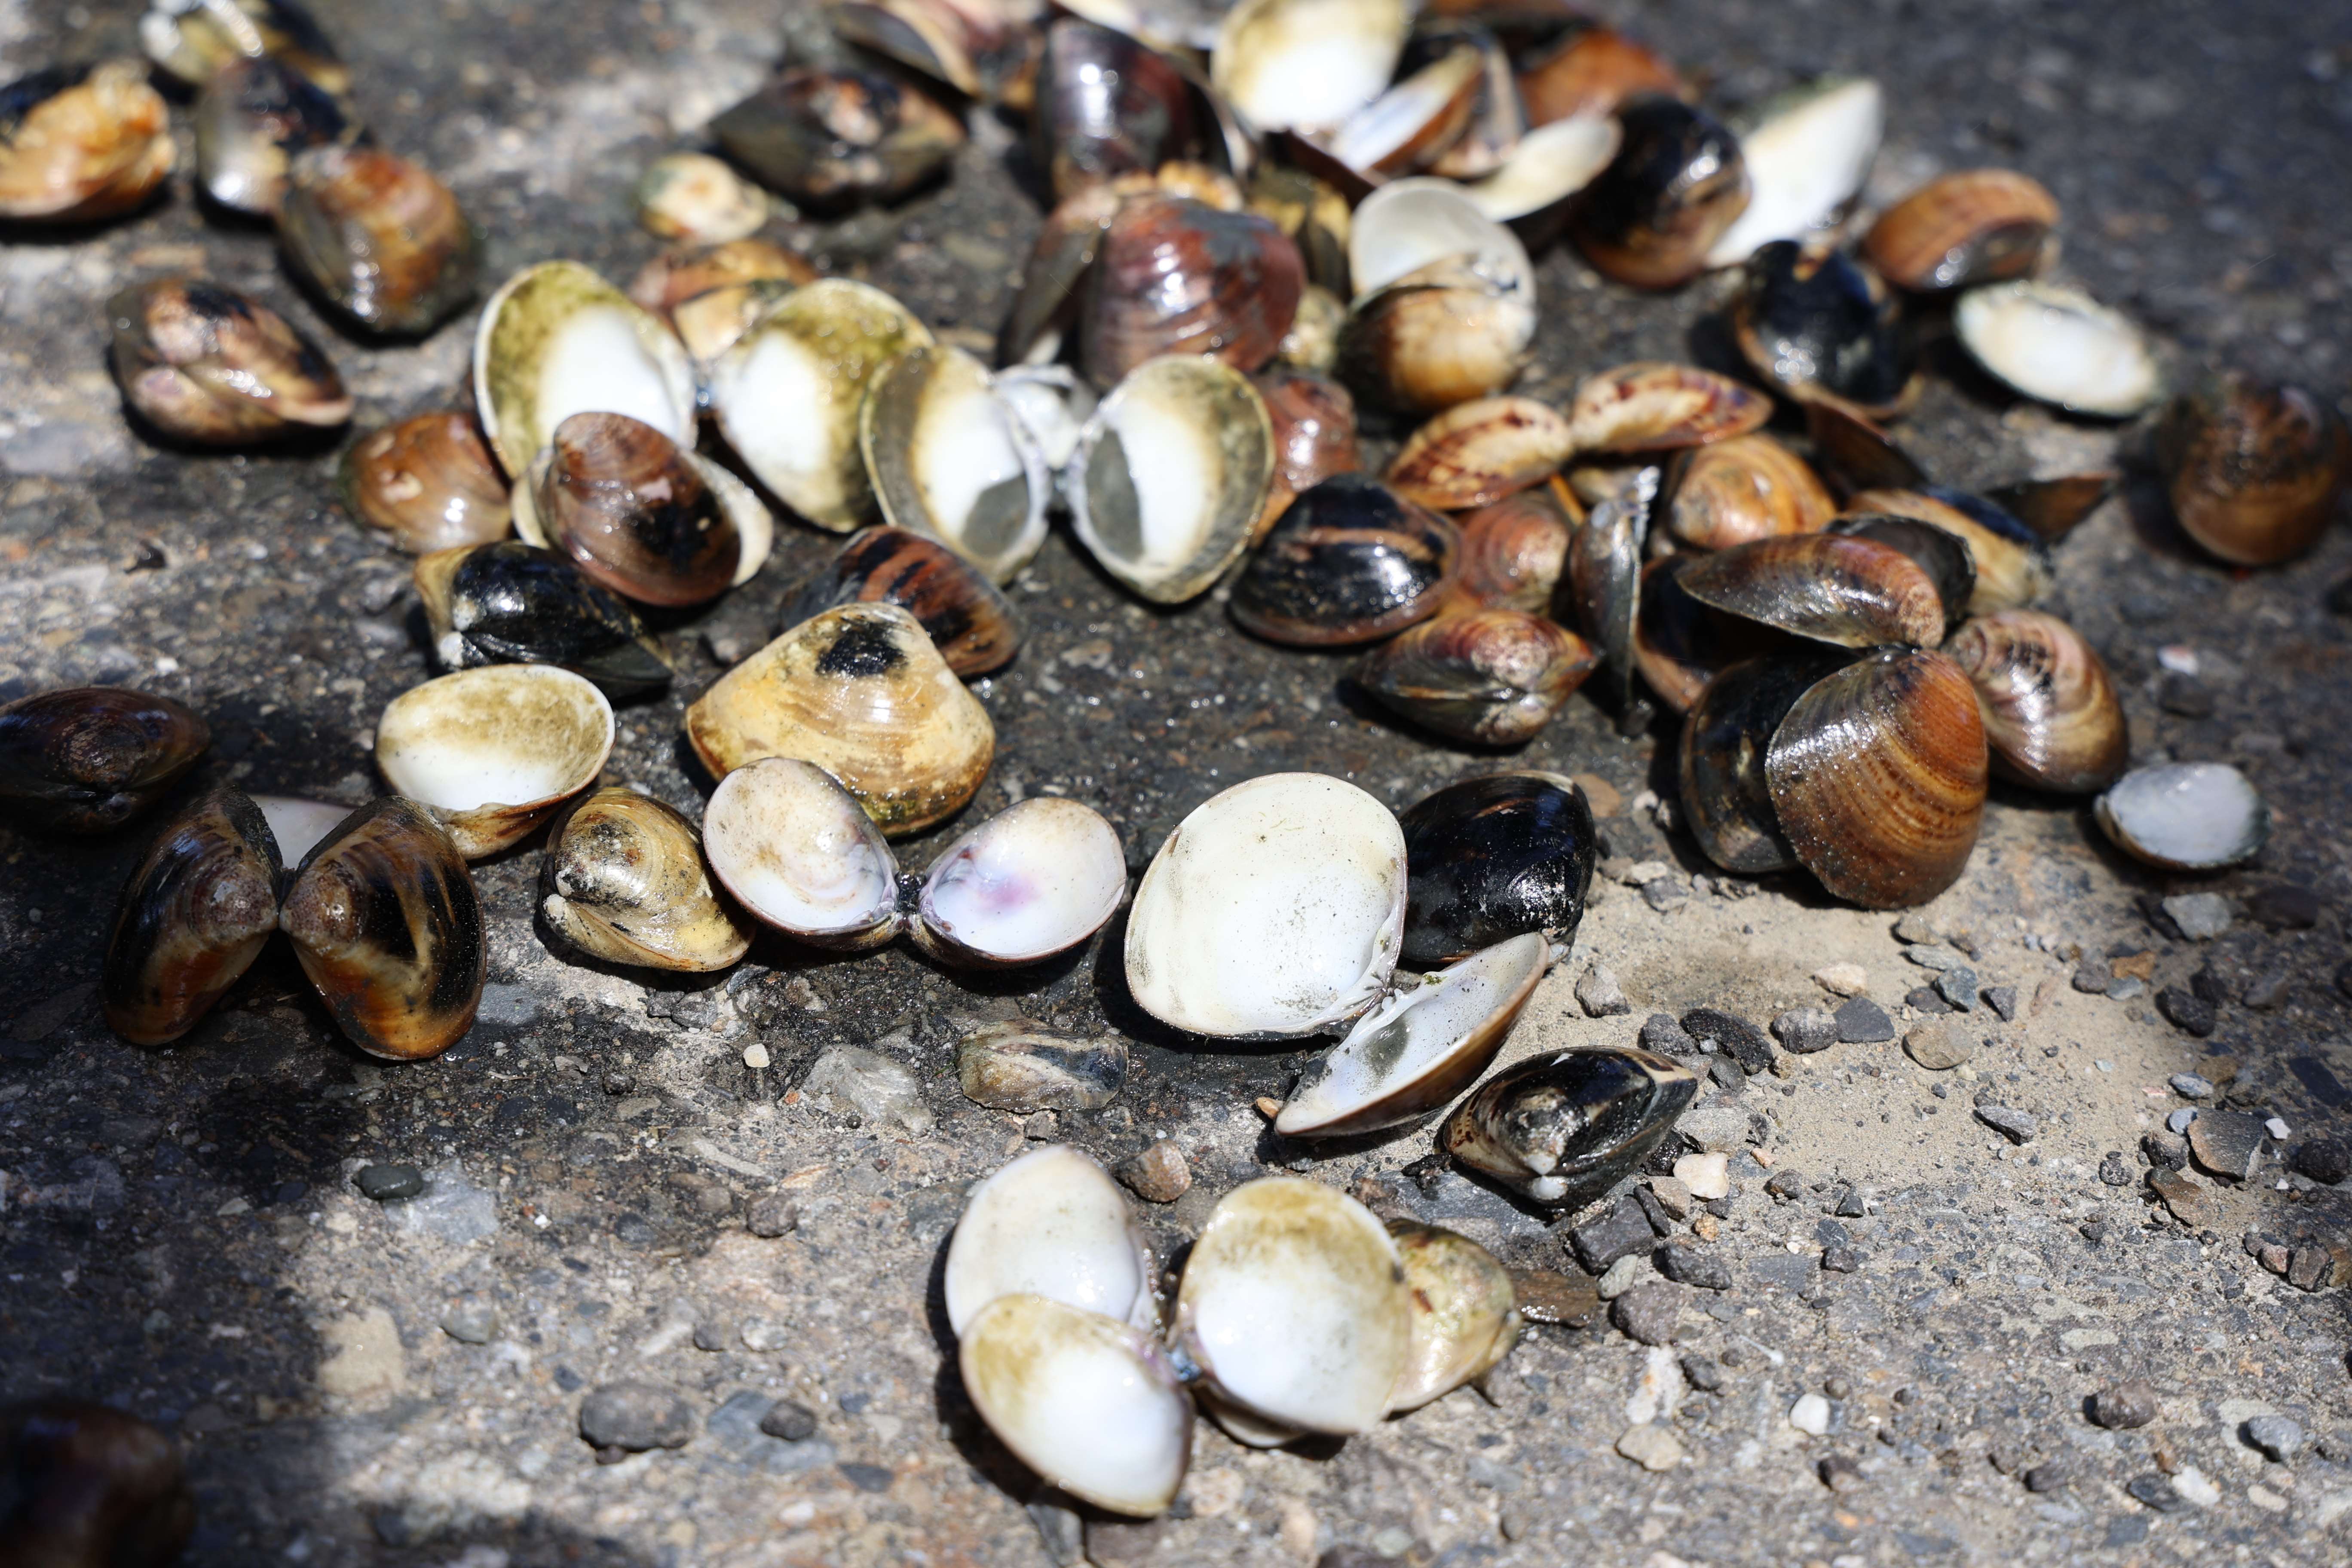 雲林縣文蛤養殖占全台10%，此次受天候影響，損失嚴重，目前初勘達7成以上